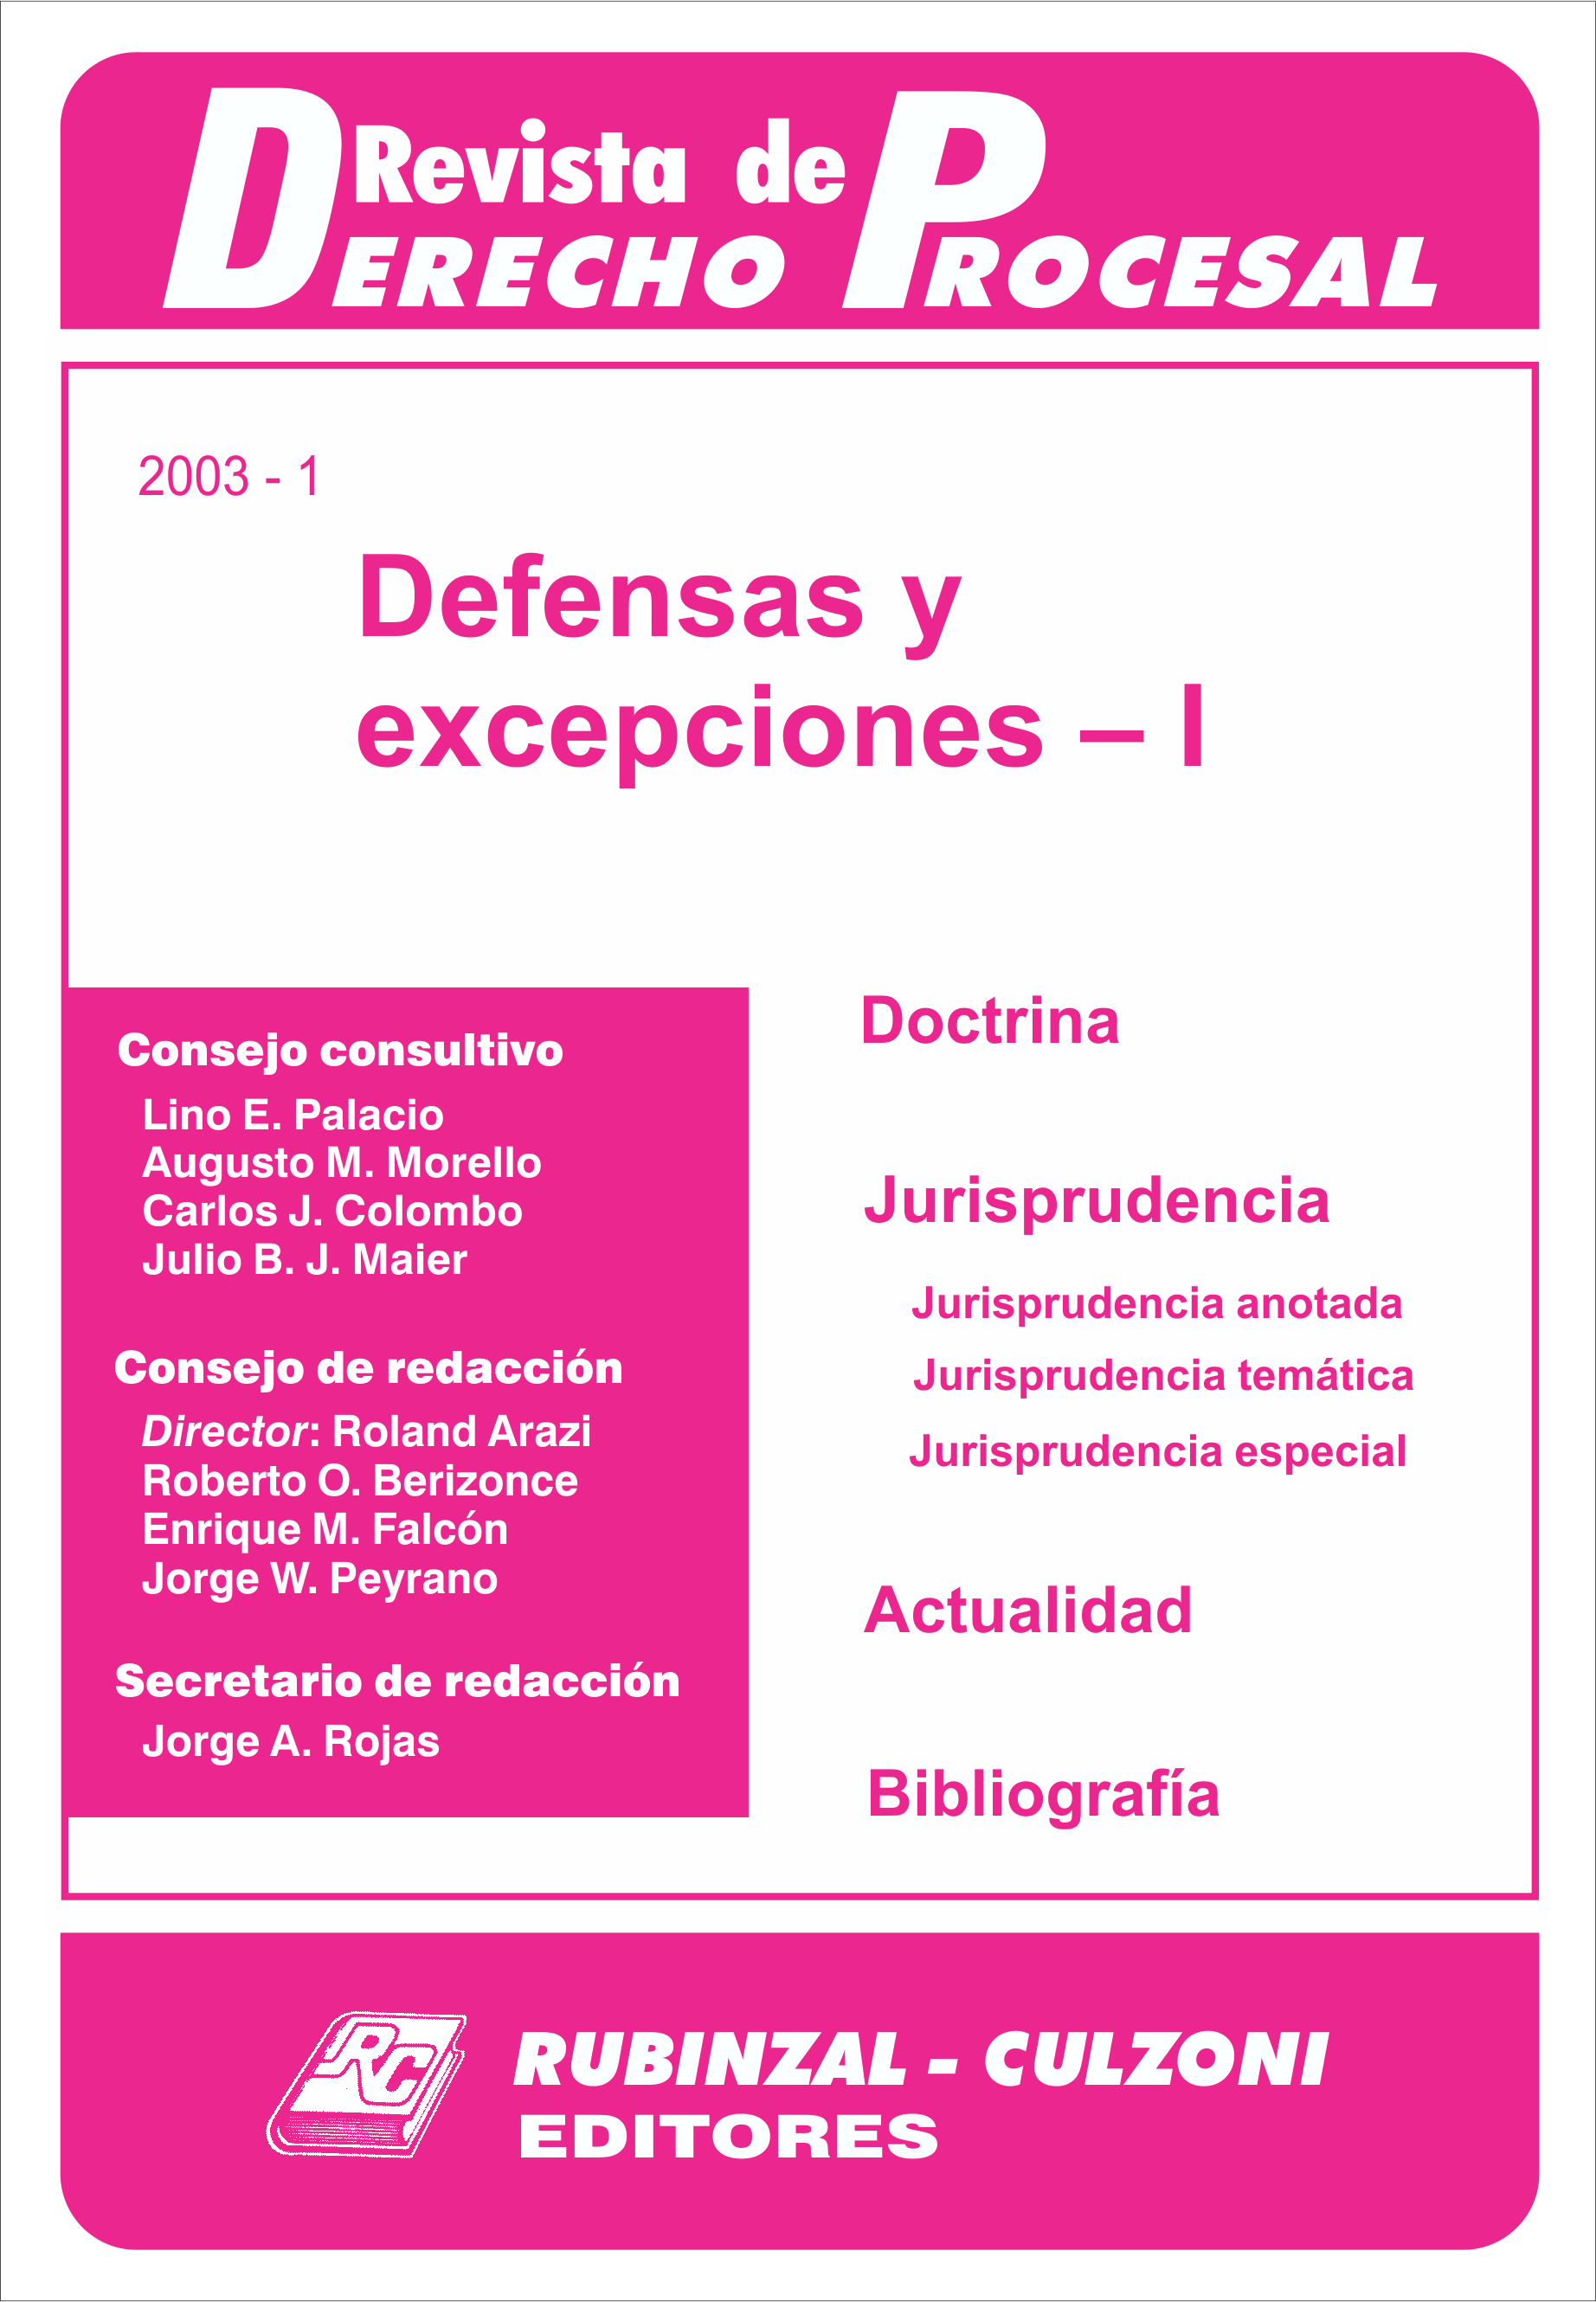 Revista de Derecho Procesal - Defensas y excepciones - I.